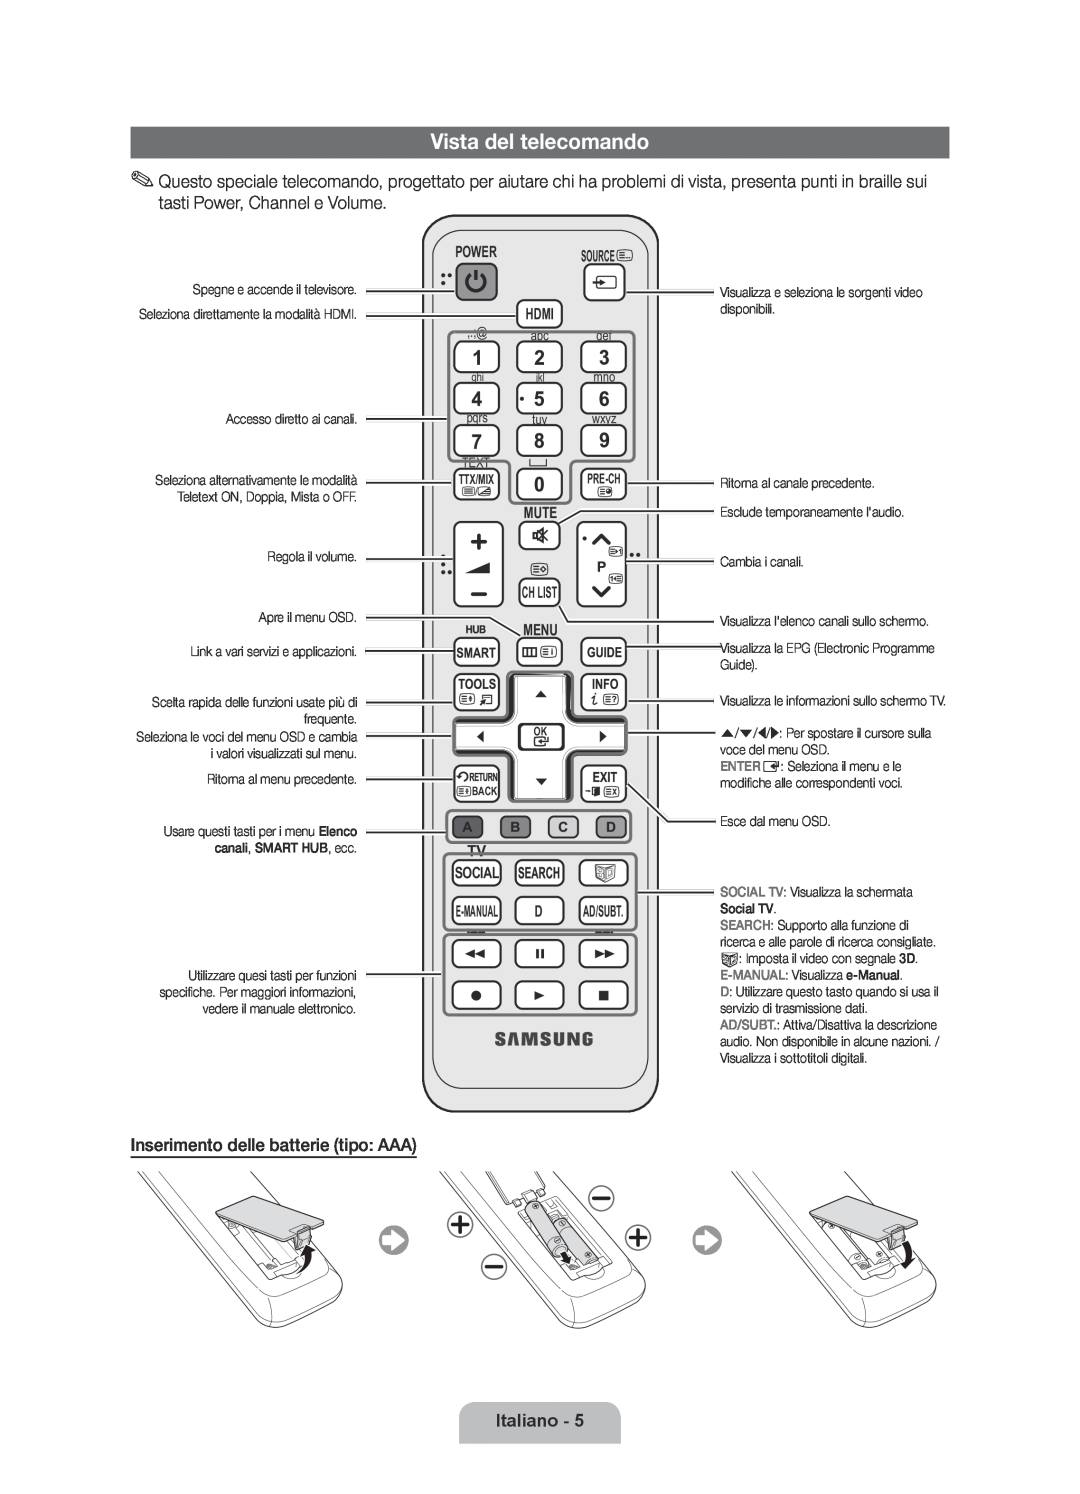 Samsung UE40D6000TPXZT manual Vista del telecomando, Italiano, Source, Menu, Tv Social E-Manual D, Ad/Subt, Ch List 